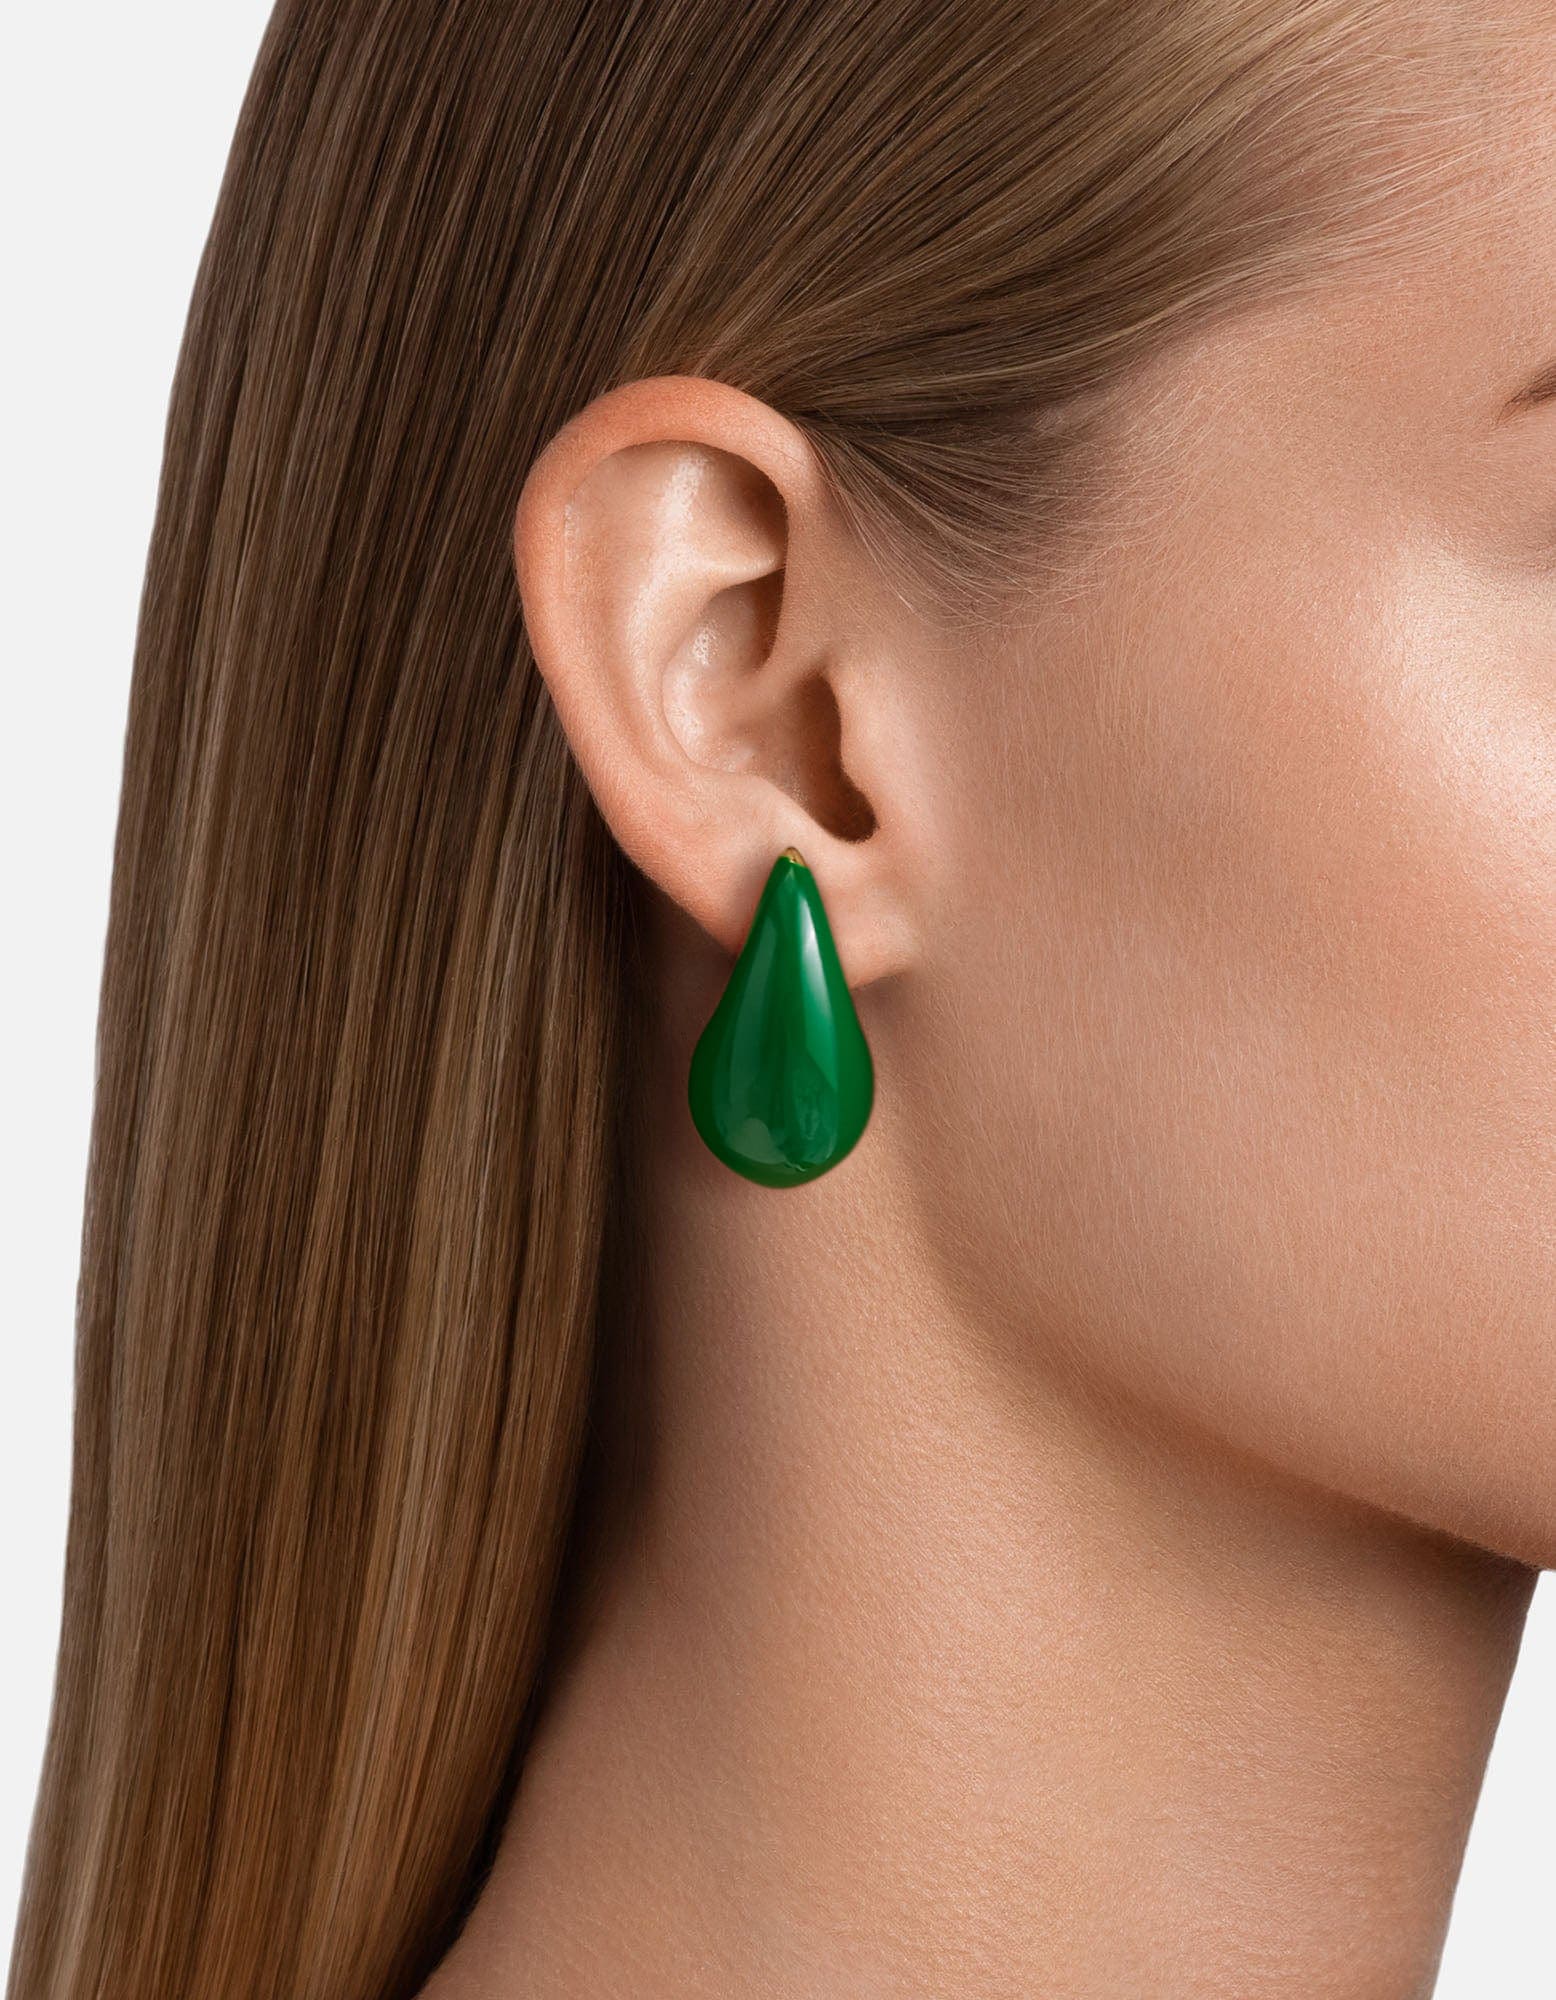 Green Enamel Earrings On Model